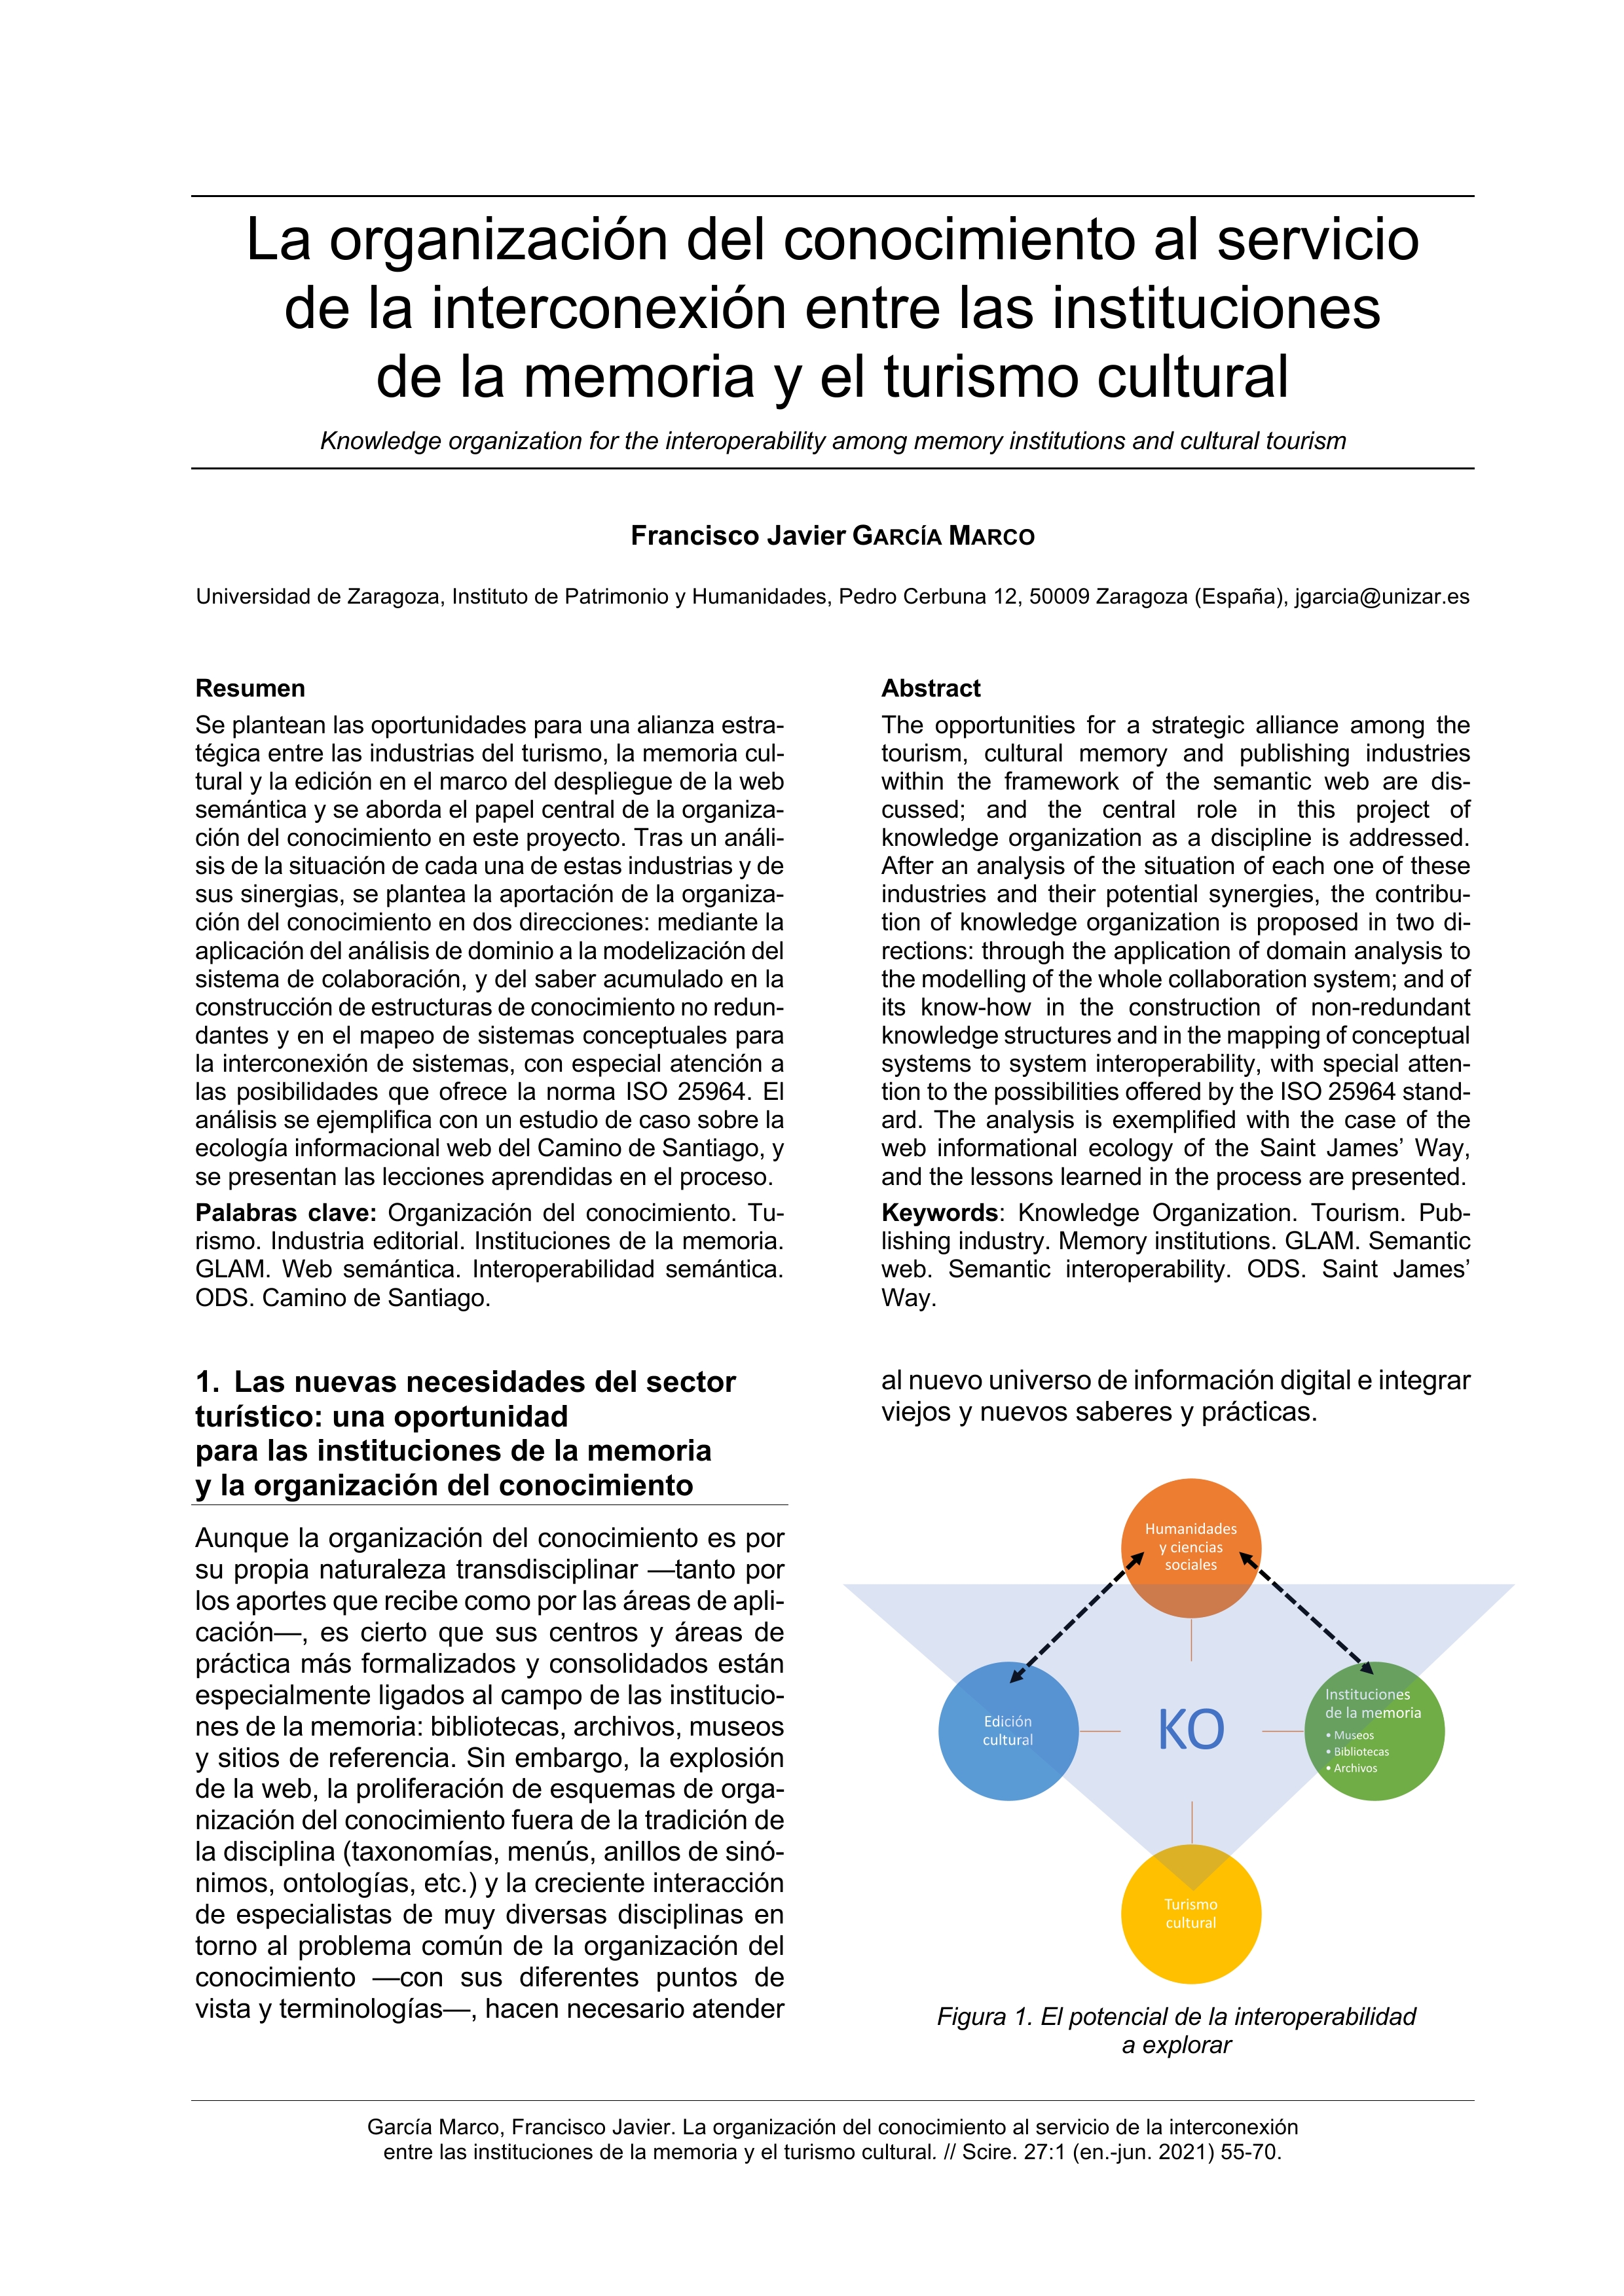 La organización del conocimiento al servicio de la interconexión entre las instituciones de la memoria y el turismo cultural